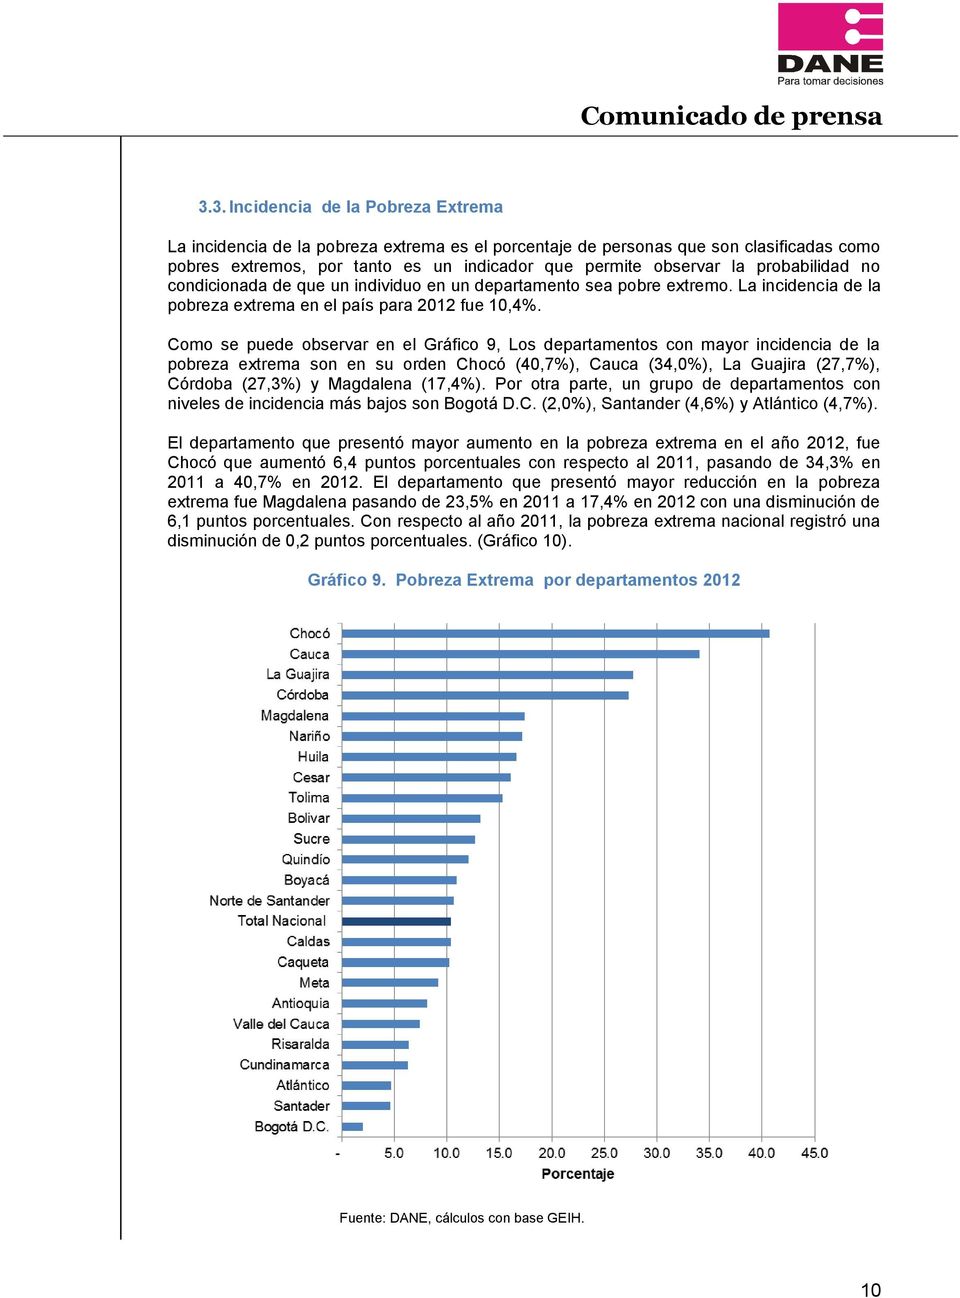 Como se puede observar en el Gráfico 9, Los departamentos con mayor incidencia de la pobreza extrema son en su orden Chocó (40,7%), Cauca (34,0%), La Guajira (27,7%), Córdoba (27,3%) y Magdalena